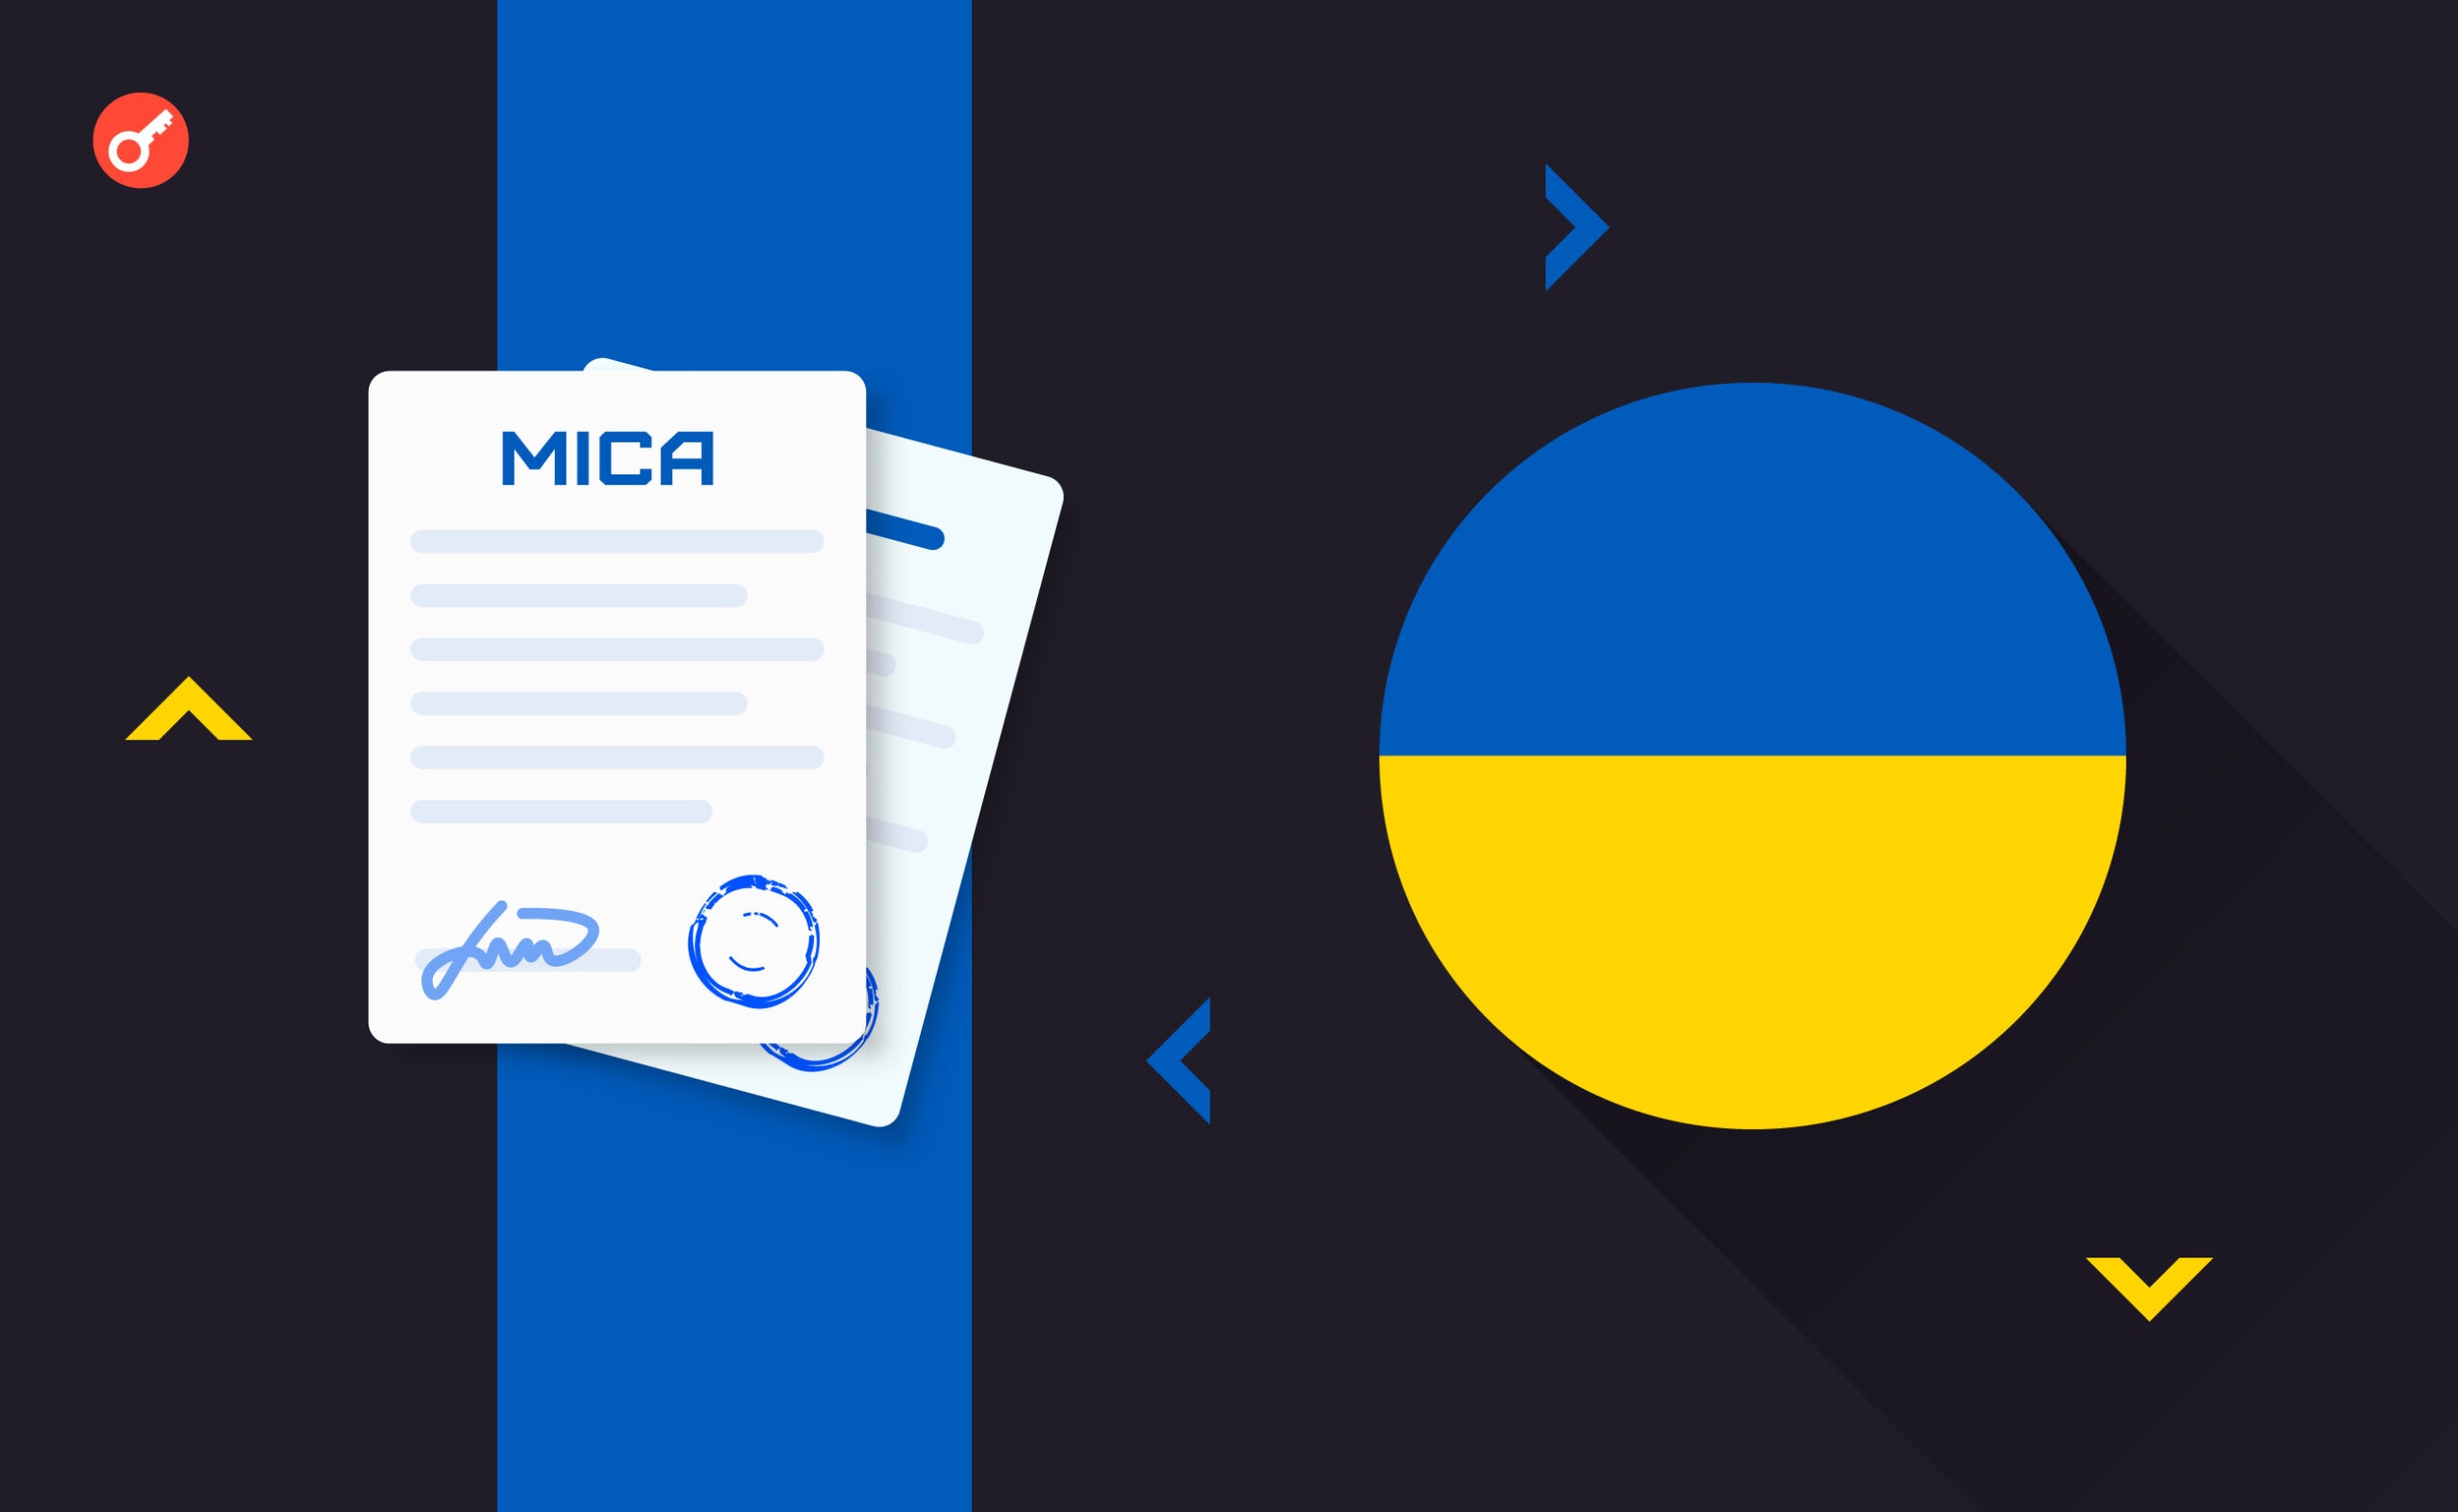 Украина готова в сентябре внедрить крипто-налоги и закон MiCA. Заглавный коллаж новости.